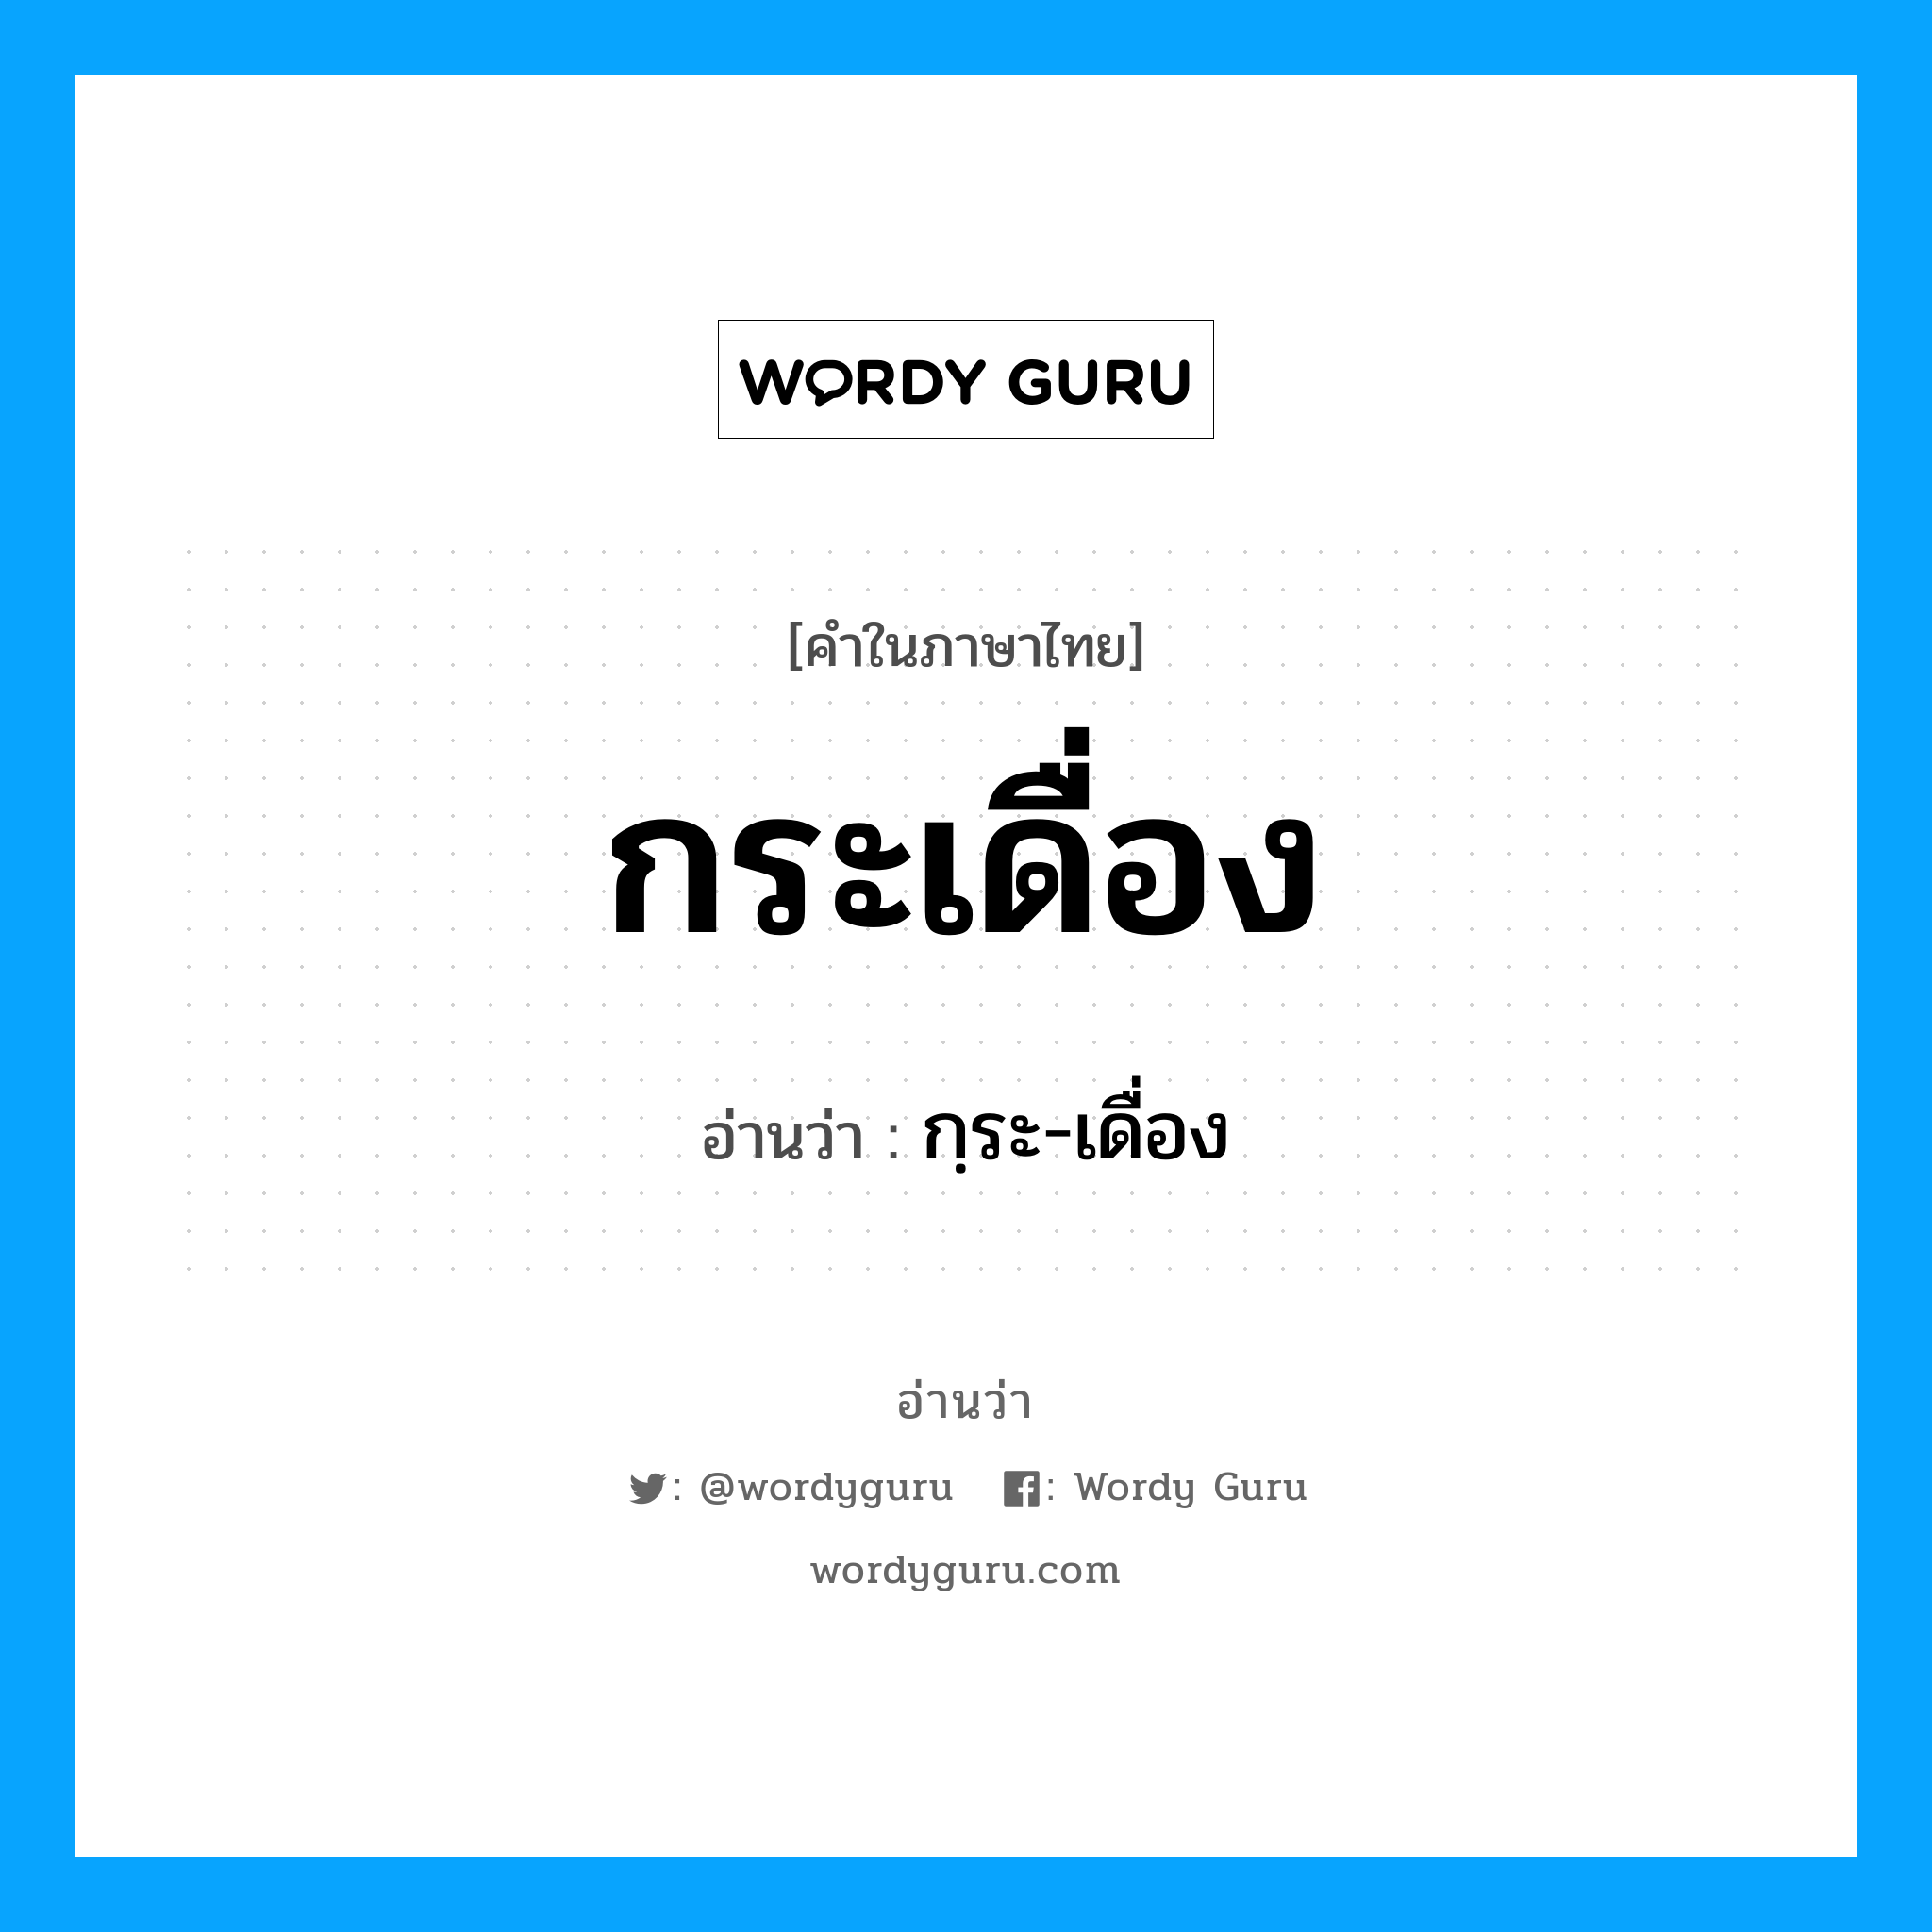 กฺระ-เดื่อง เป็นคำอ่านของคำไหน?, คำในภาษาไทย กฺระ-เดื่อง อ่านว่า กระเดื่อง